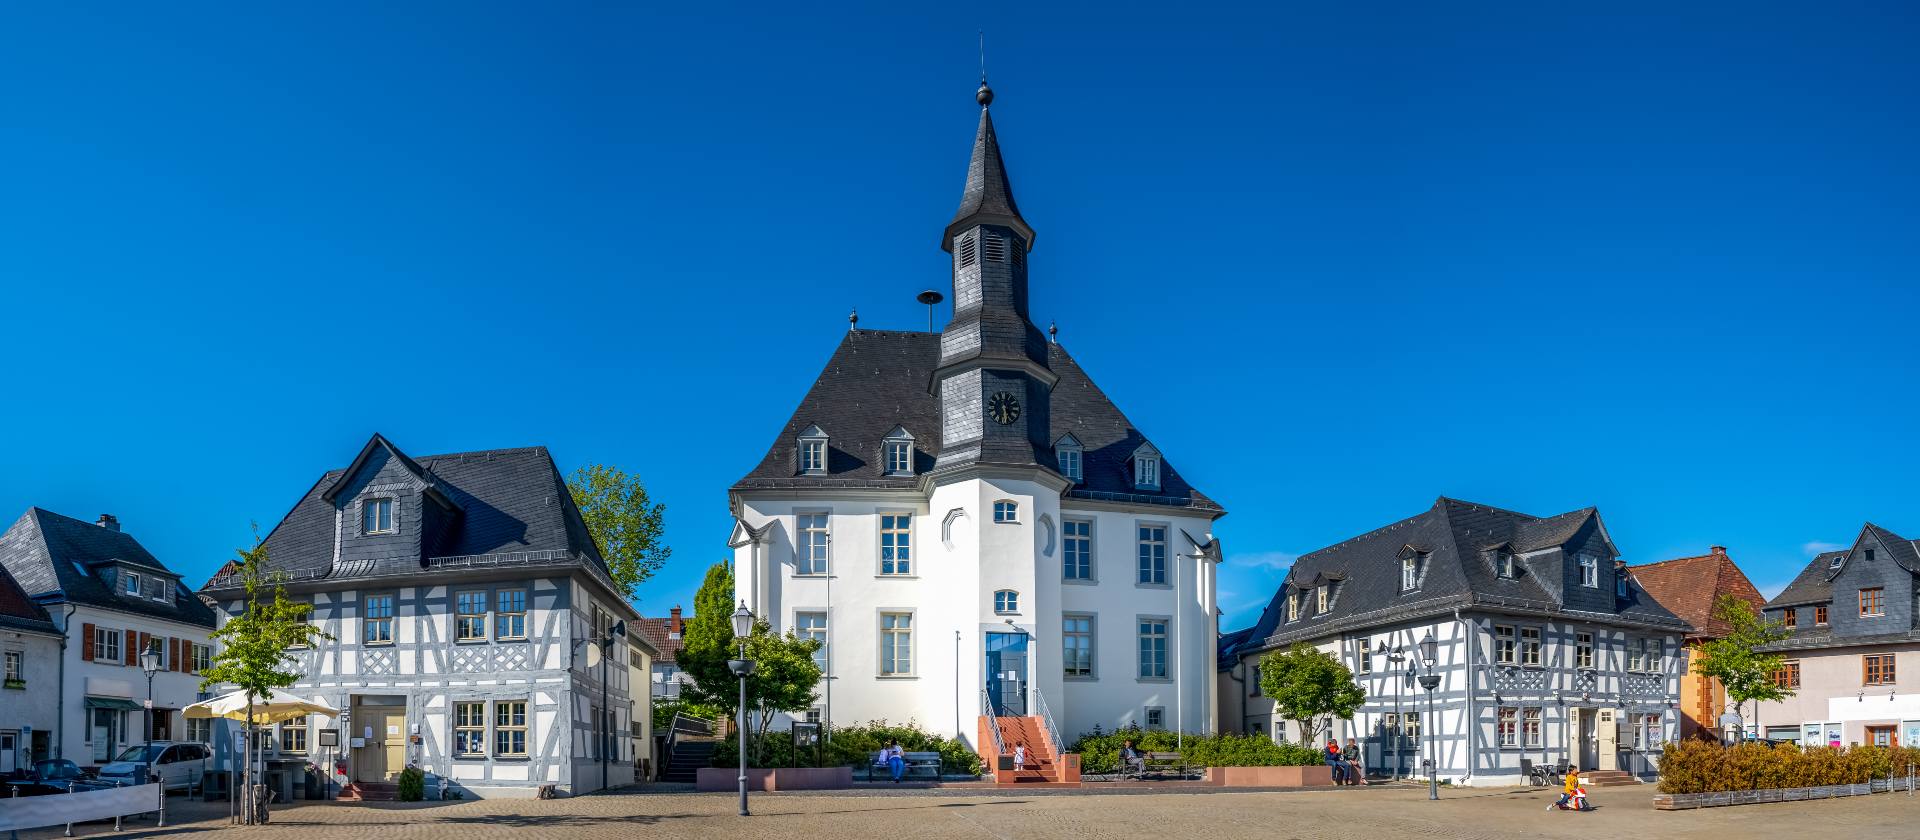 Marktplatz und Rathaus in Usingen